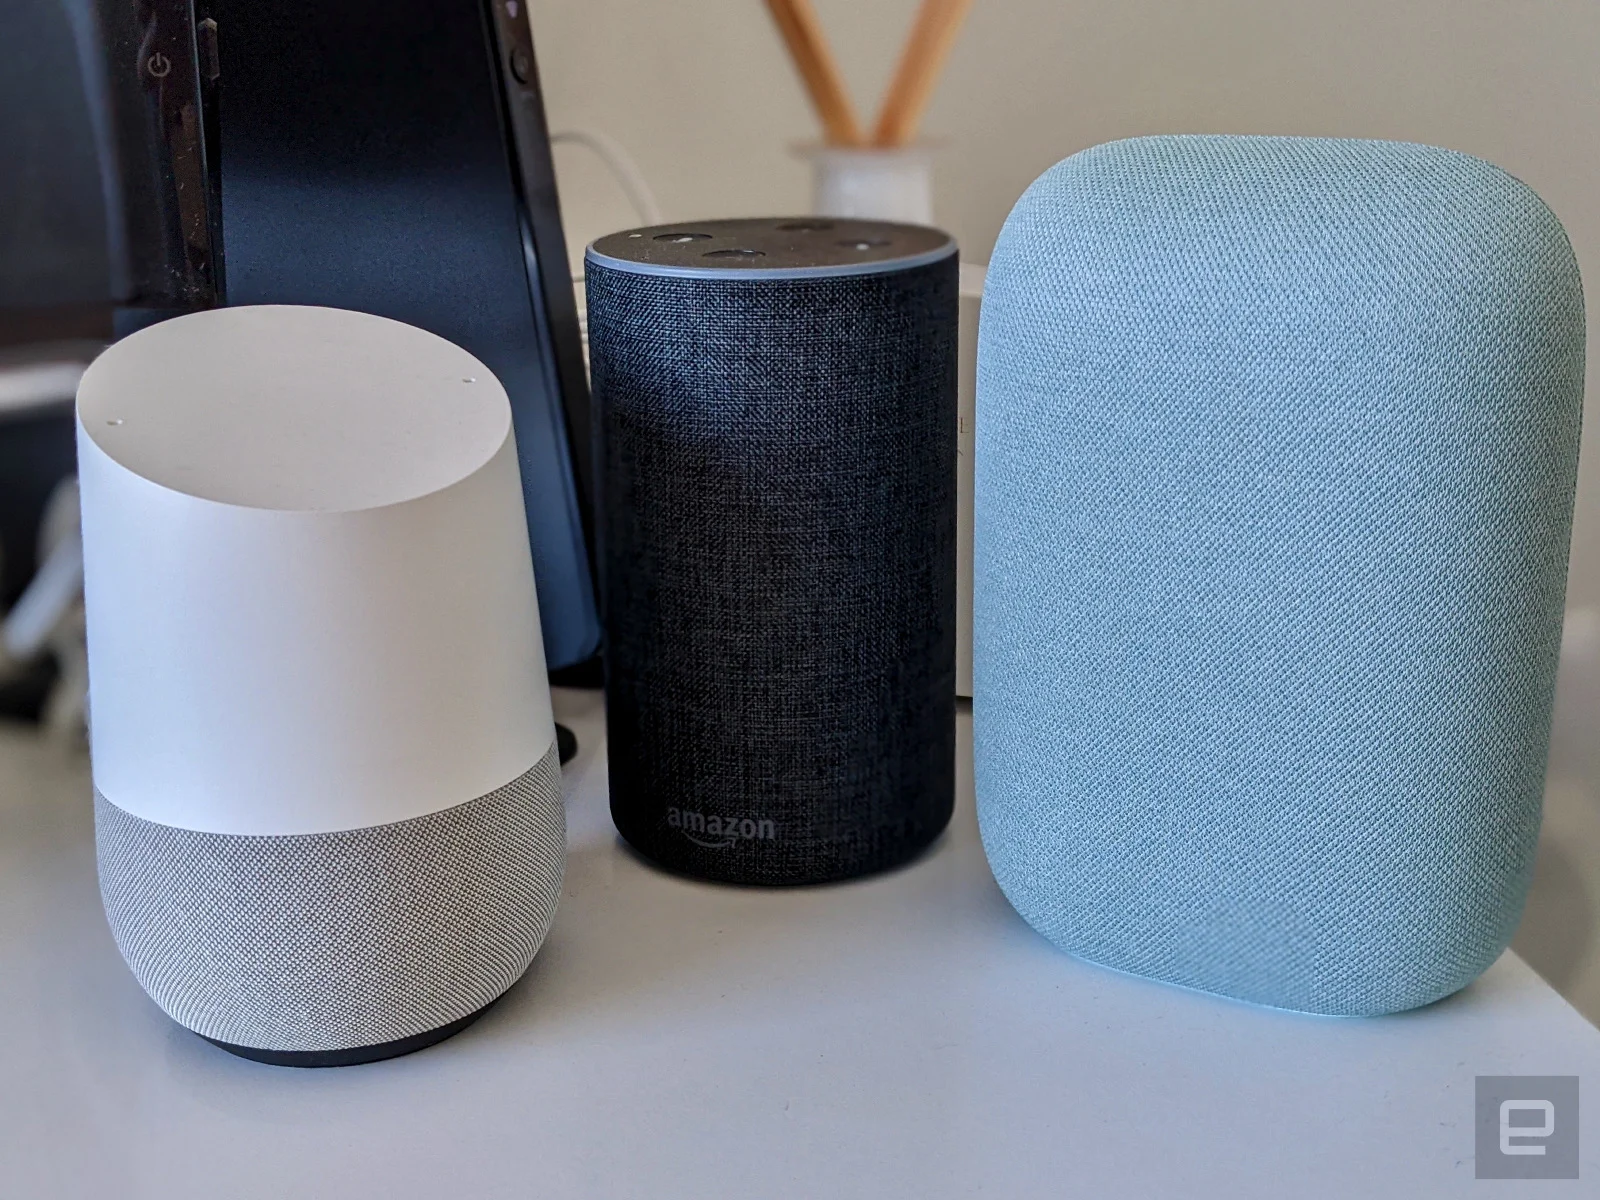 Google Home, Amazon Echo and Nest Audio